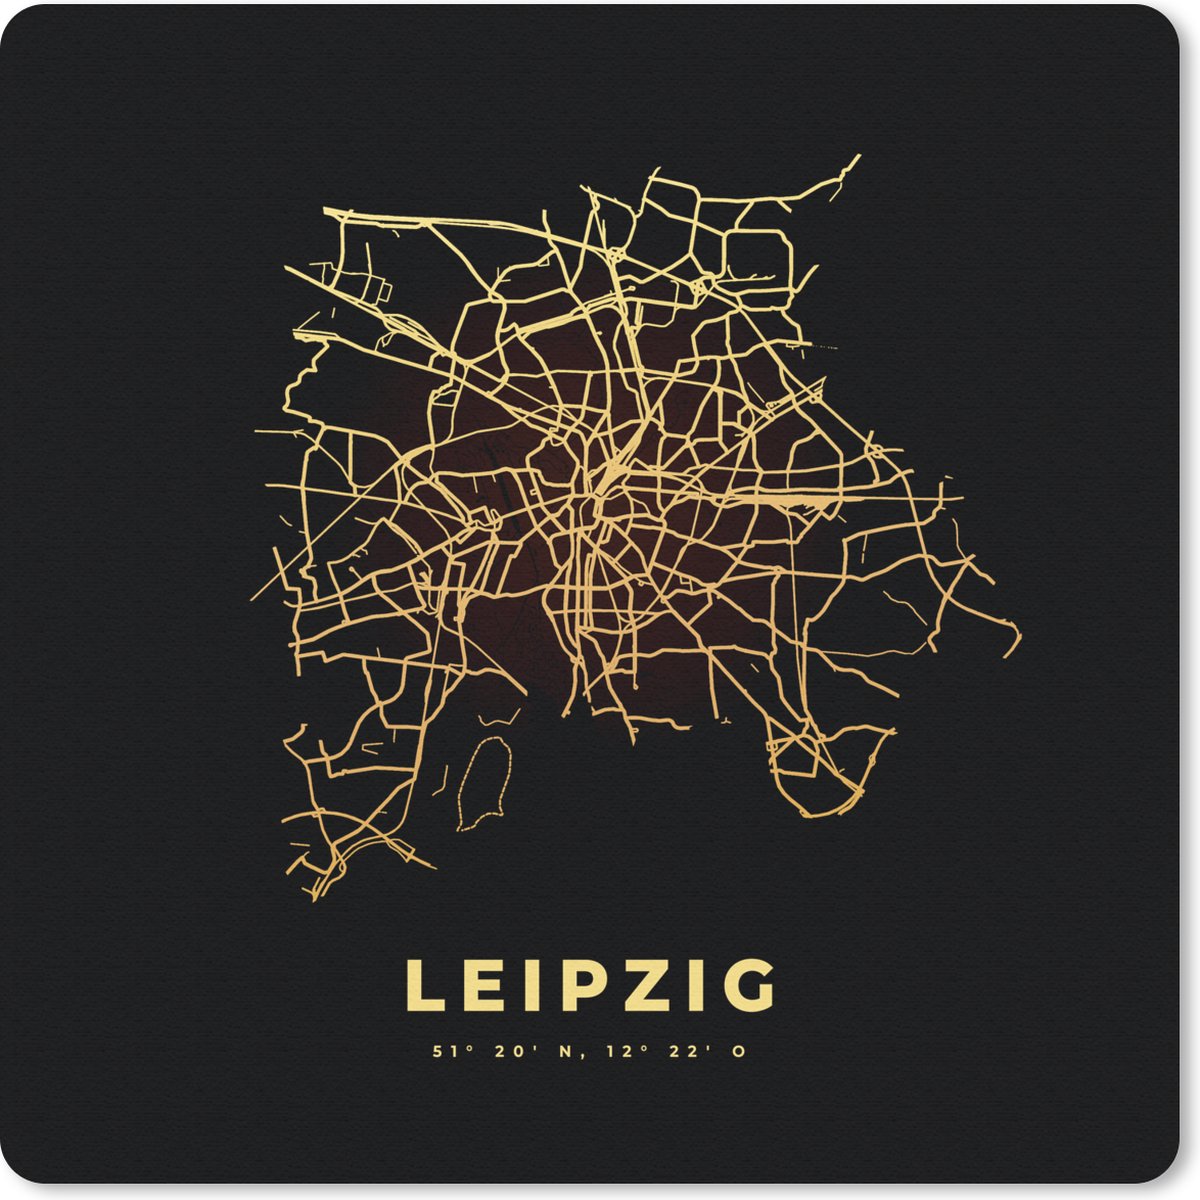 Muismat Klein - Kaart - Leipzig - Gold - Plattegrond - Stadskaart - 20x20 cm